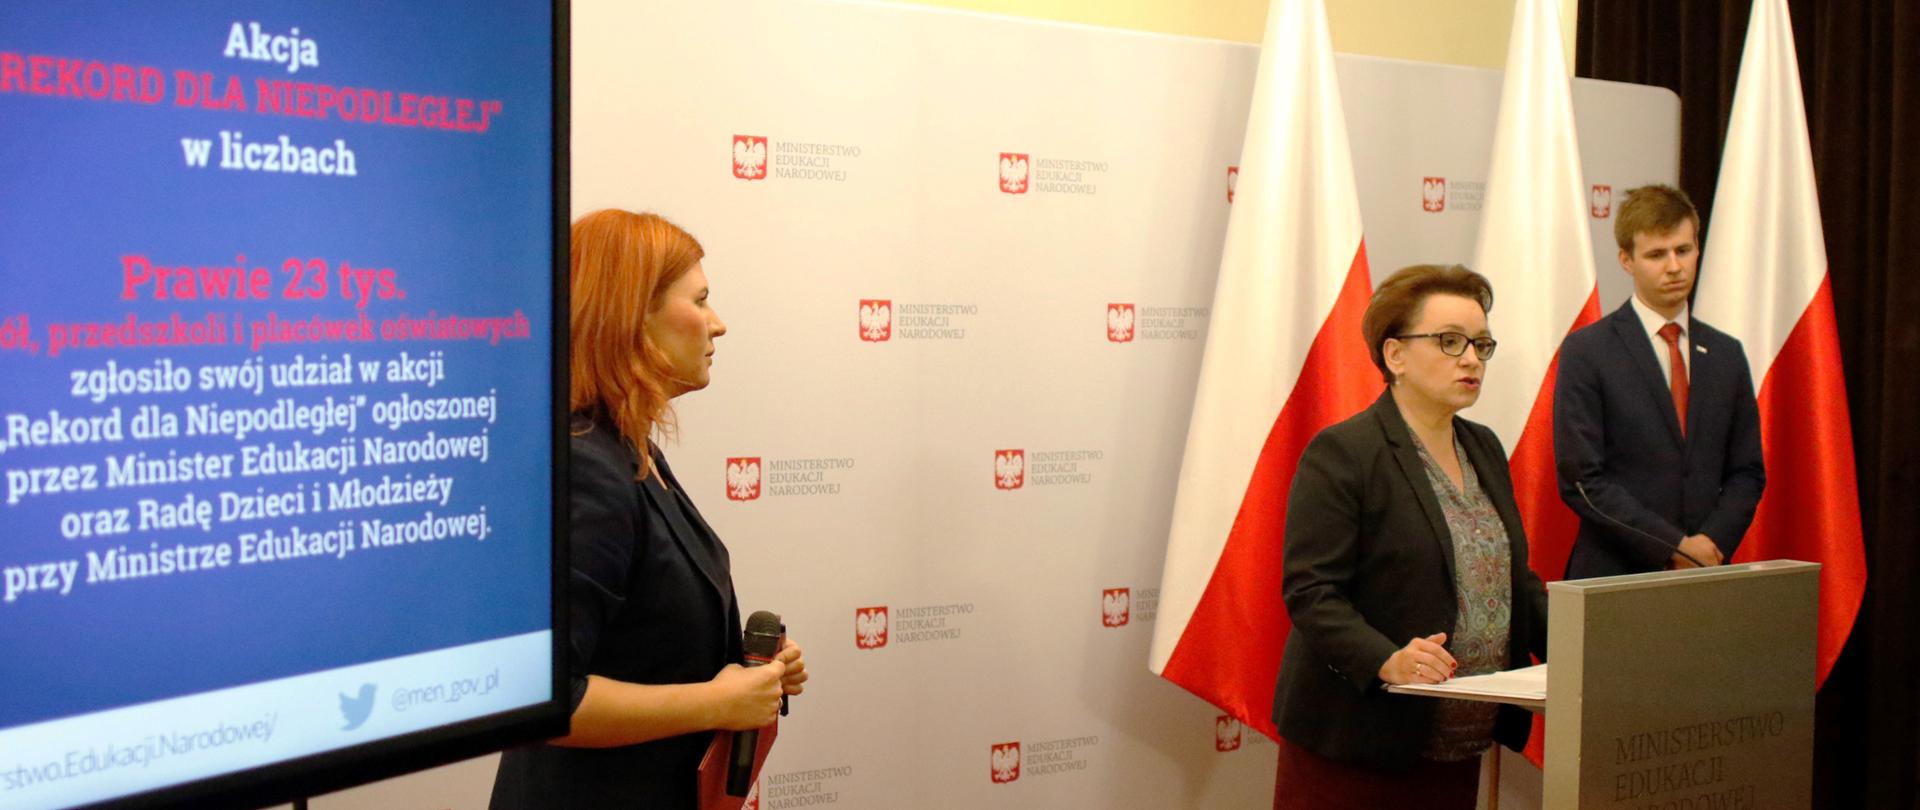 Konferencja prasowa Minister Edukacji Narodowej Anny Zalewskiej. W tle monitor z wyświetlaną planszą o akcji Rekord dla Niepodległej. W tle biało czerwone-flagi